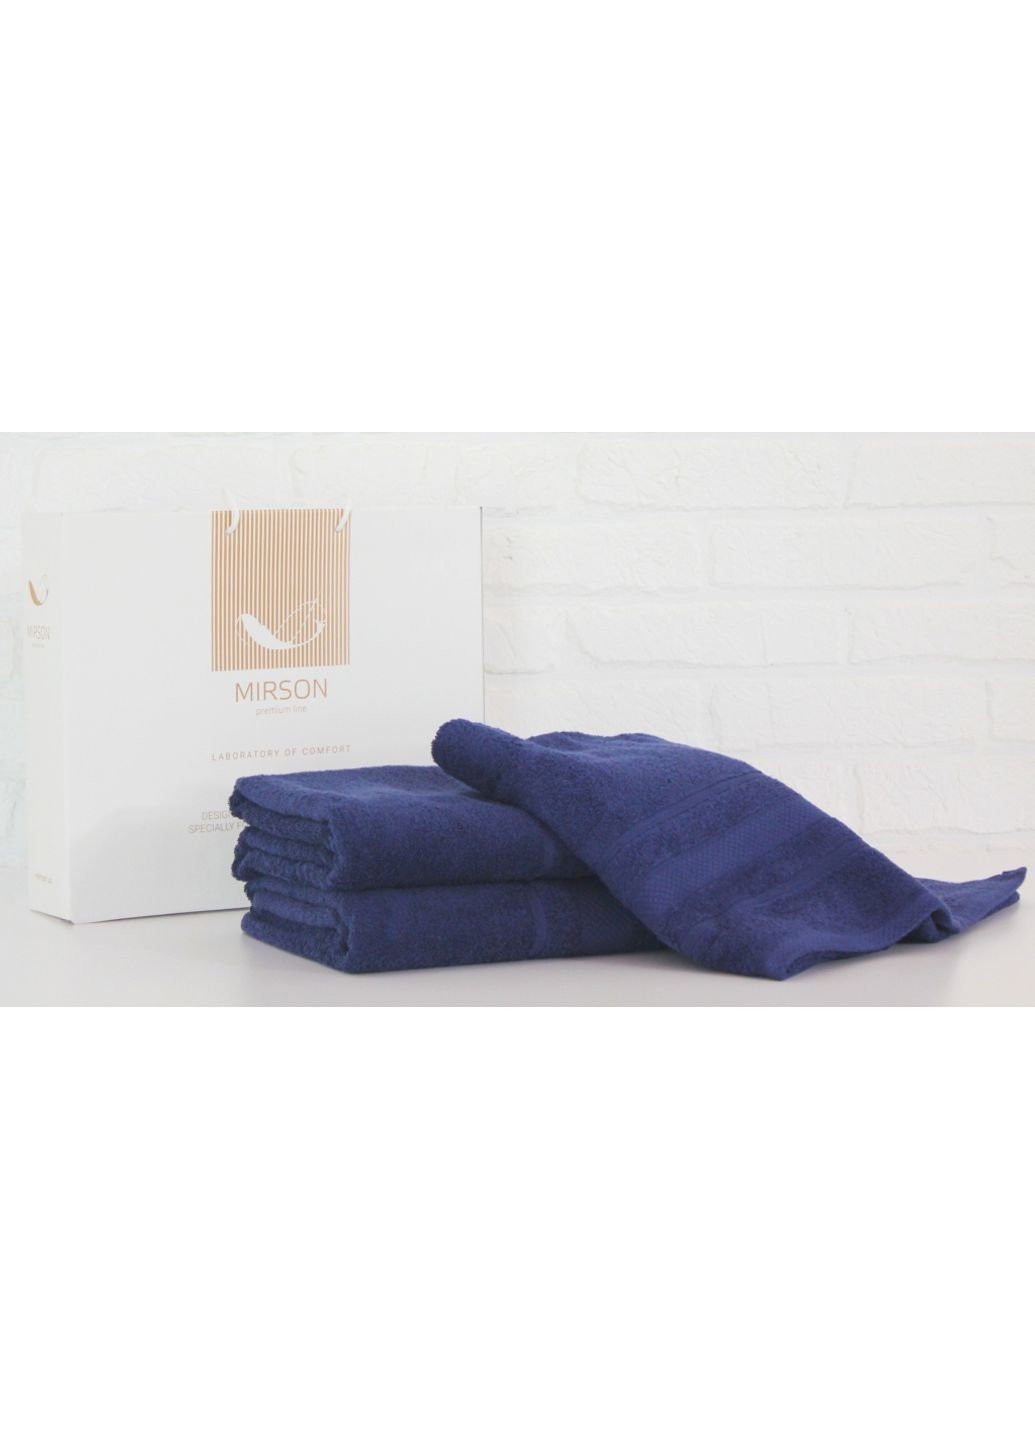 Mirson полотенце набор банных №5076 elite softness kingblue 50х90, 70х140, 10 (2200003960969) синий производство - Украина